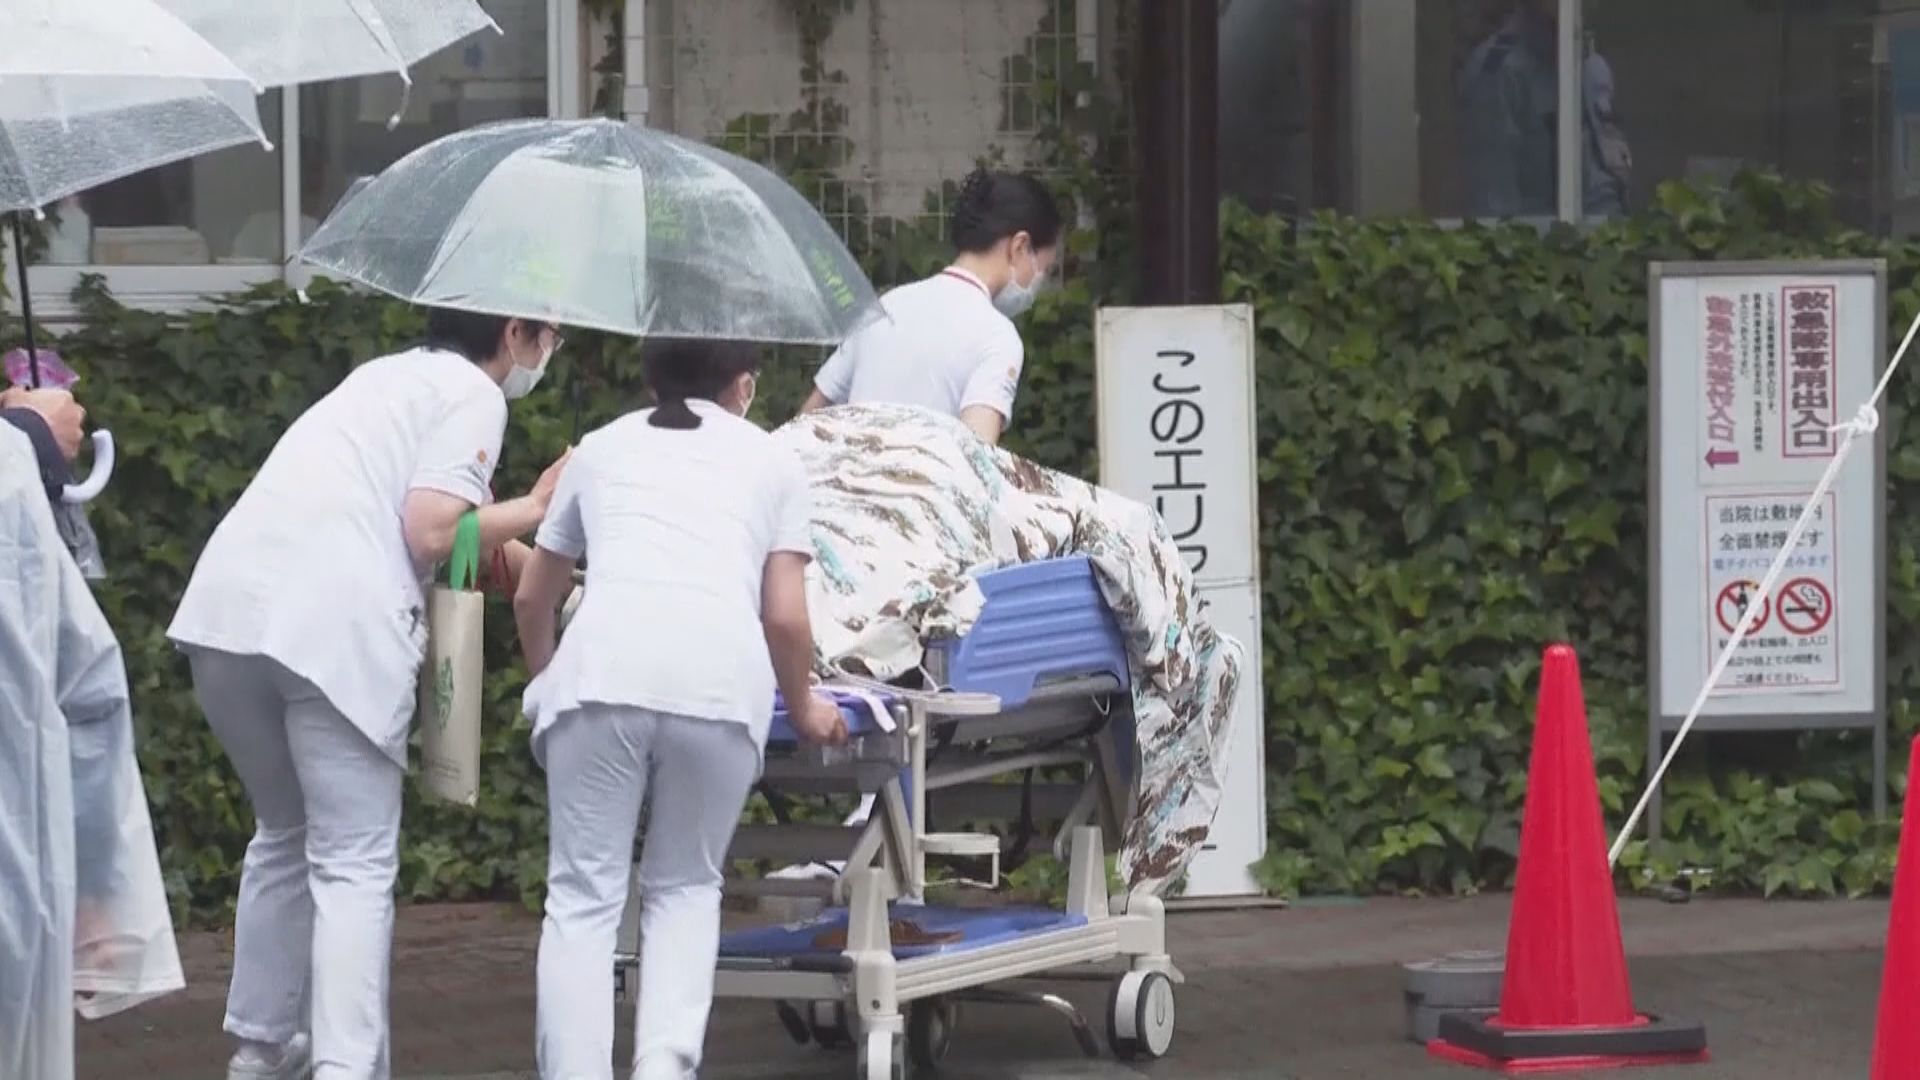 共同社引消息東京都擬設兩間專門醫院　收輕至中度患者